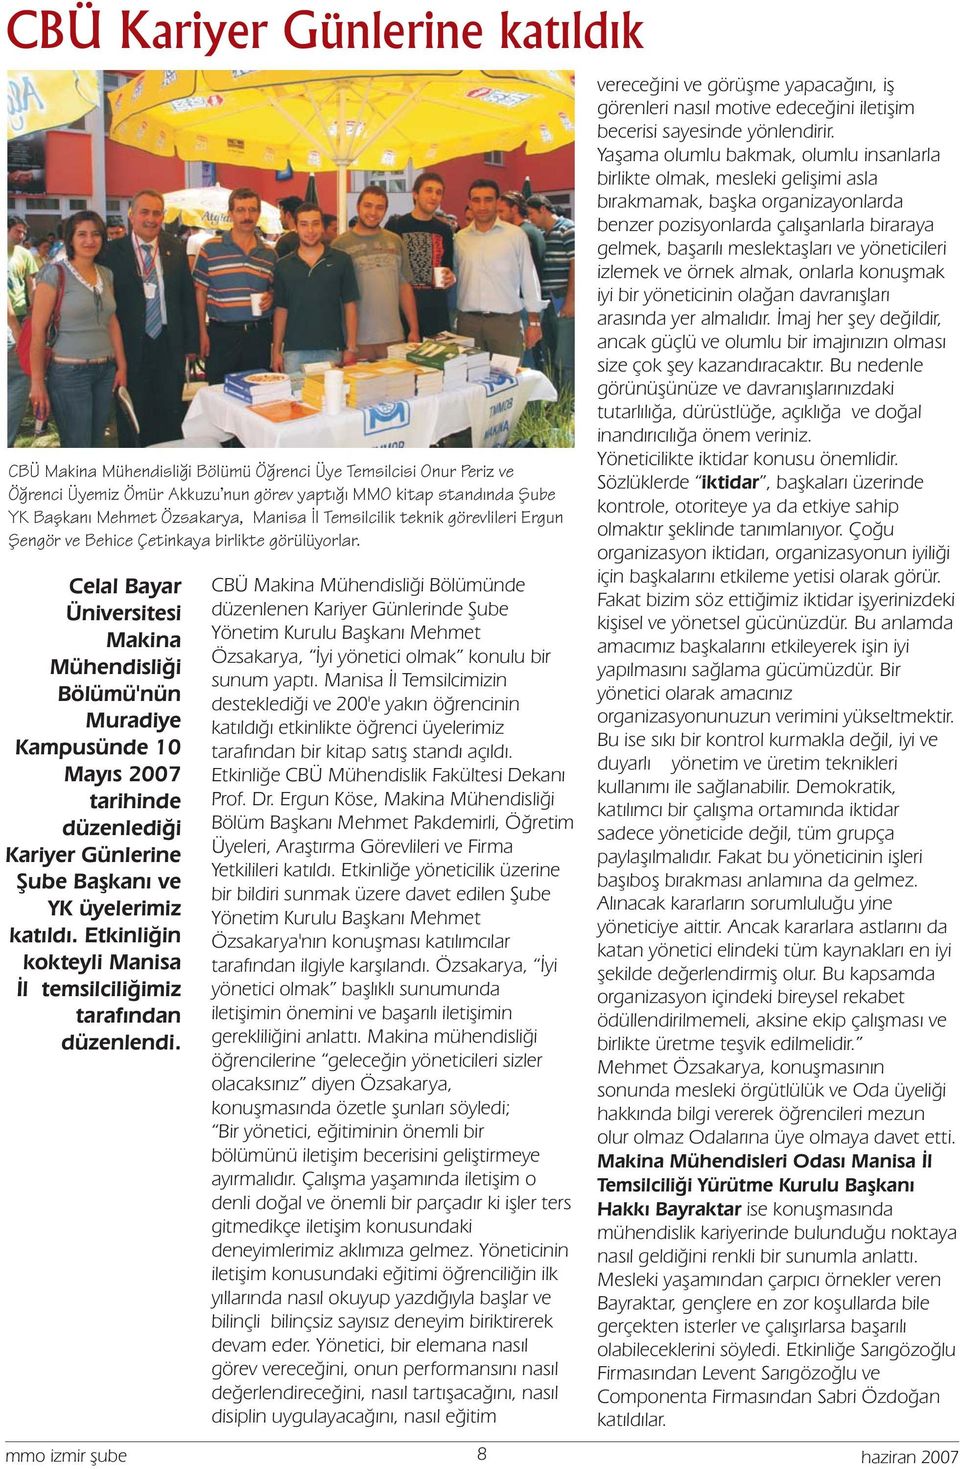 Celal Bayar Üniversitesi Makina Mühendisliği Bölümü'nün Muradiye Kampusünde 10 Mayıs 2007 tarihinde düzenlediği Kariyer Günlerine Şube Başkanı ve YK üyelerimiz katıldı.